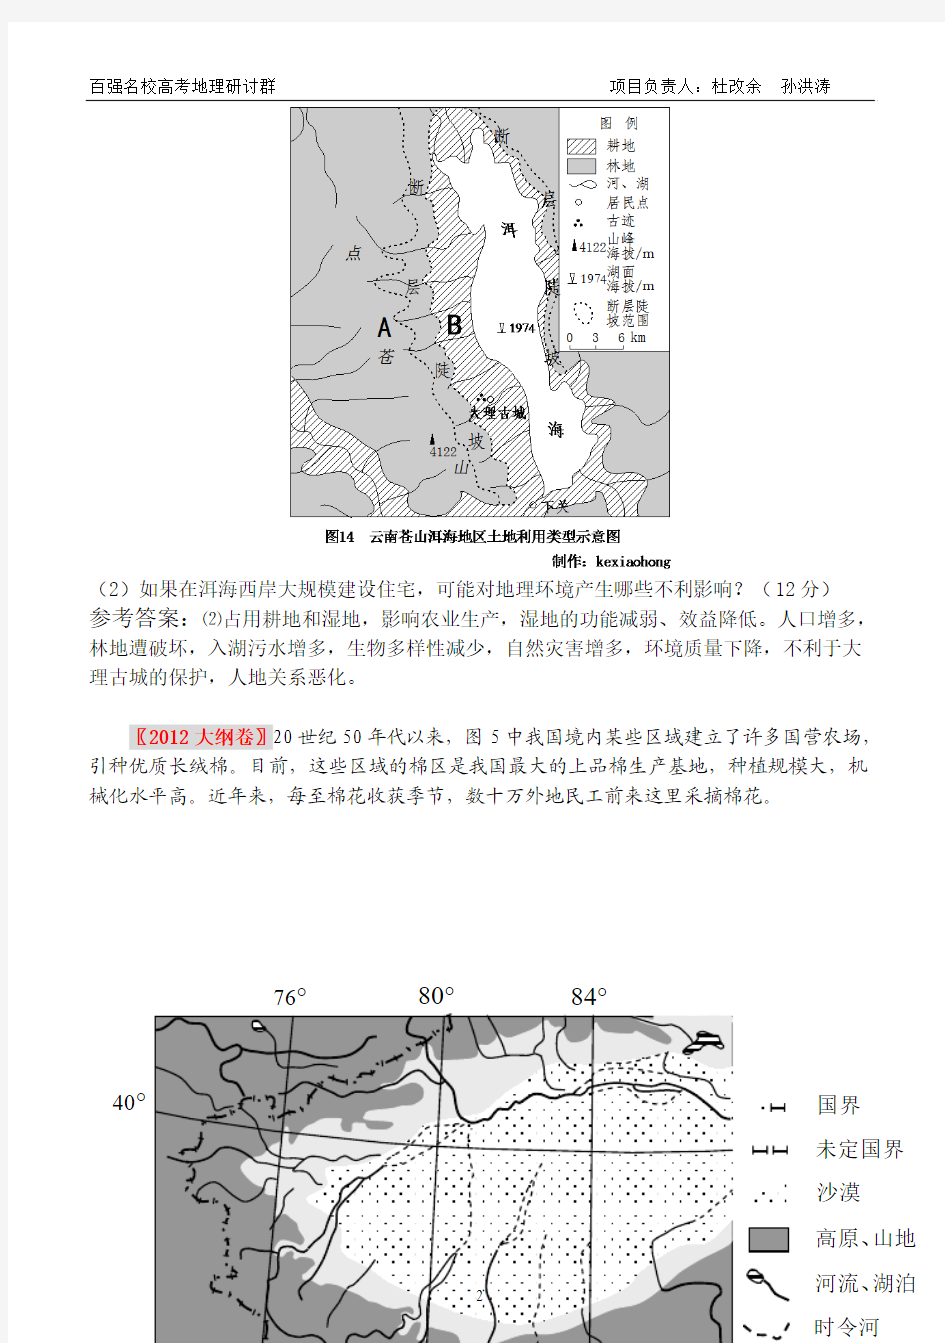 2012年高考地理试题分类汇编之专题9 区域生态环境建设、区域自然资源综合开发利用(柴永辉)